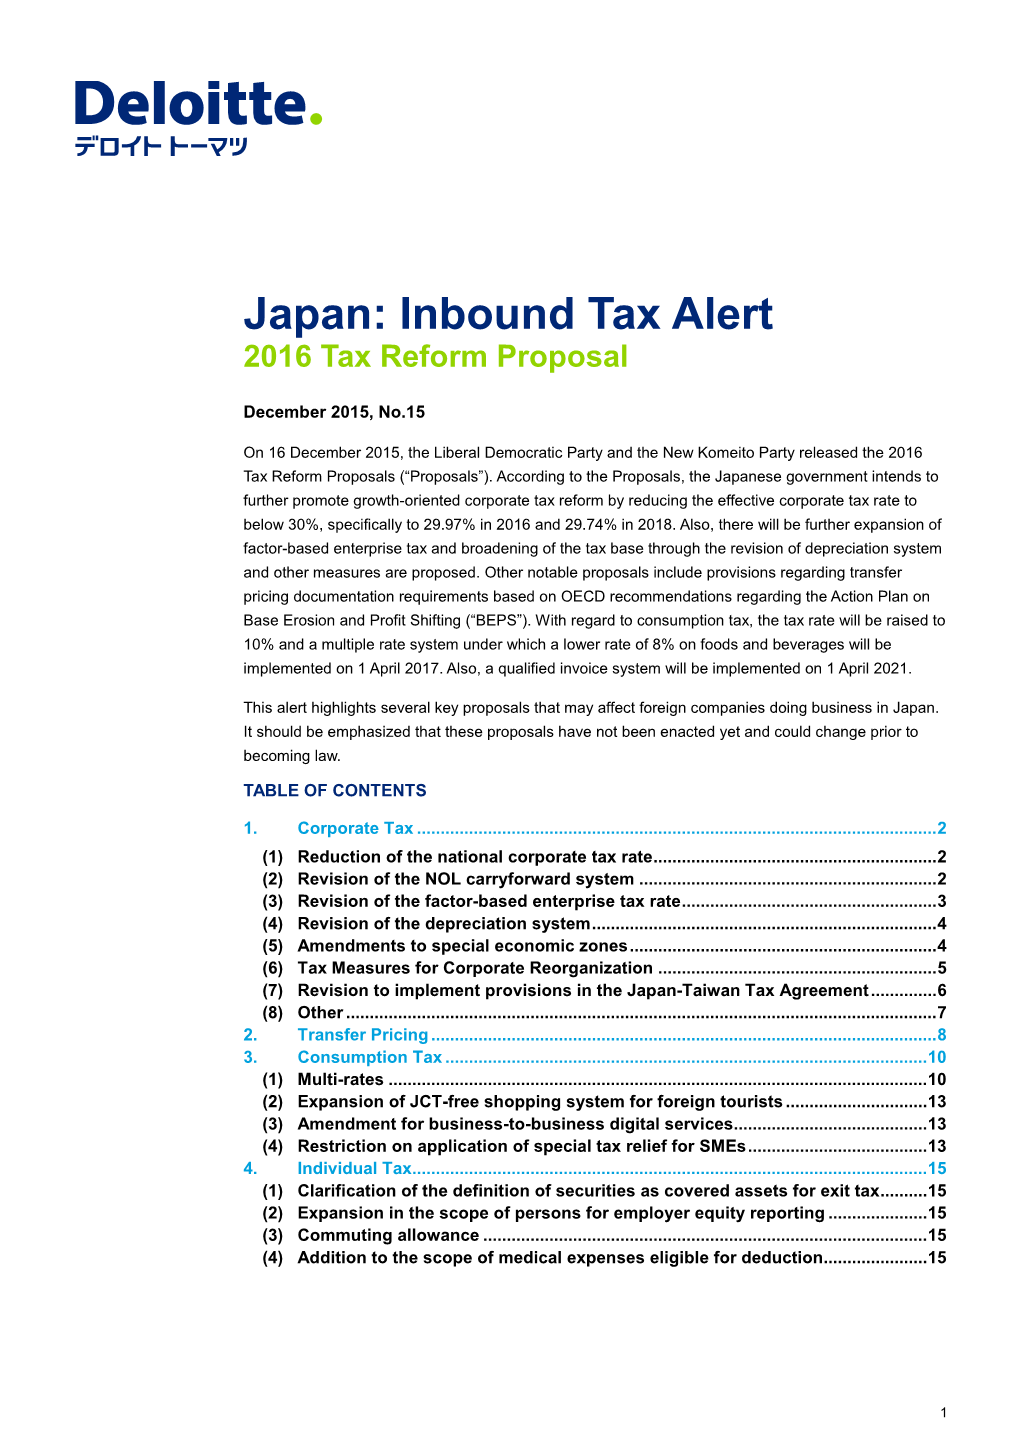 Japan:Inbound Tax Alert December 2015, No.15